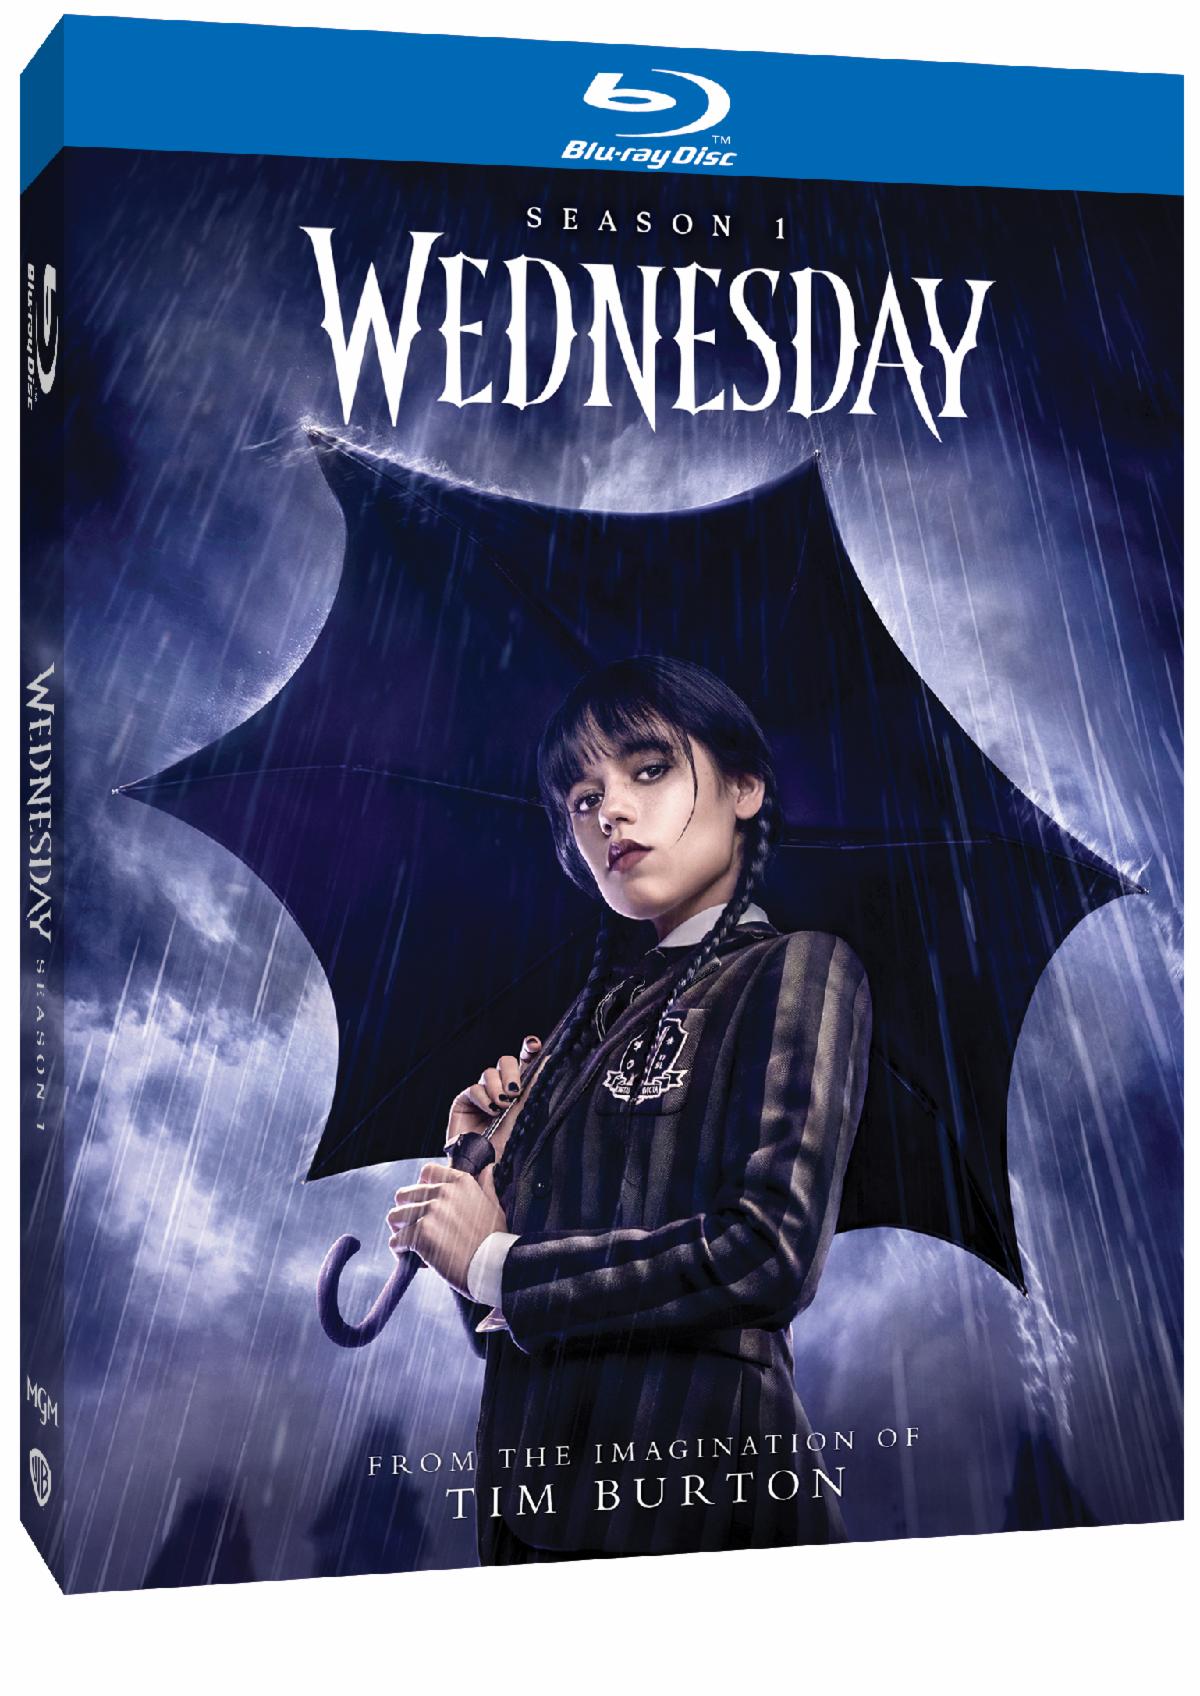 Wednesday Season One on Blu-ray